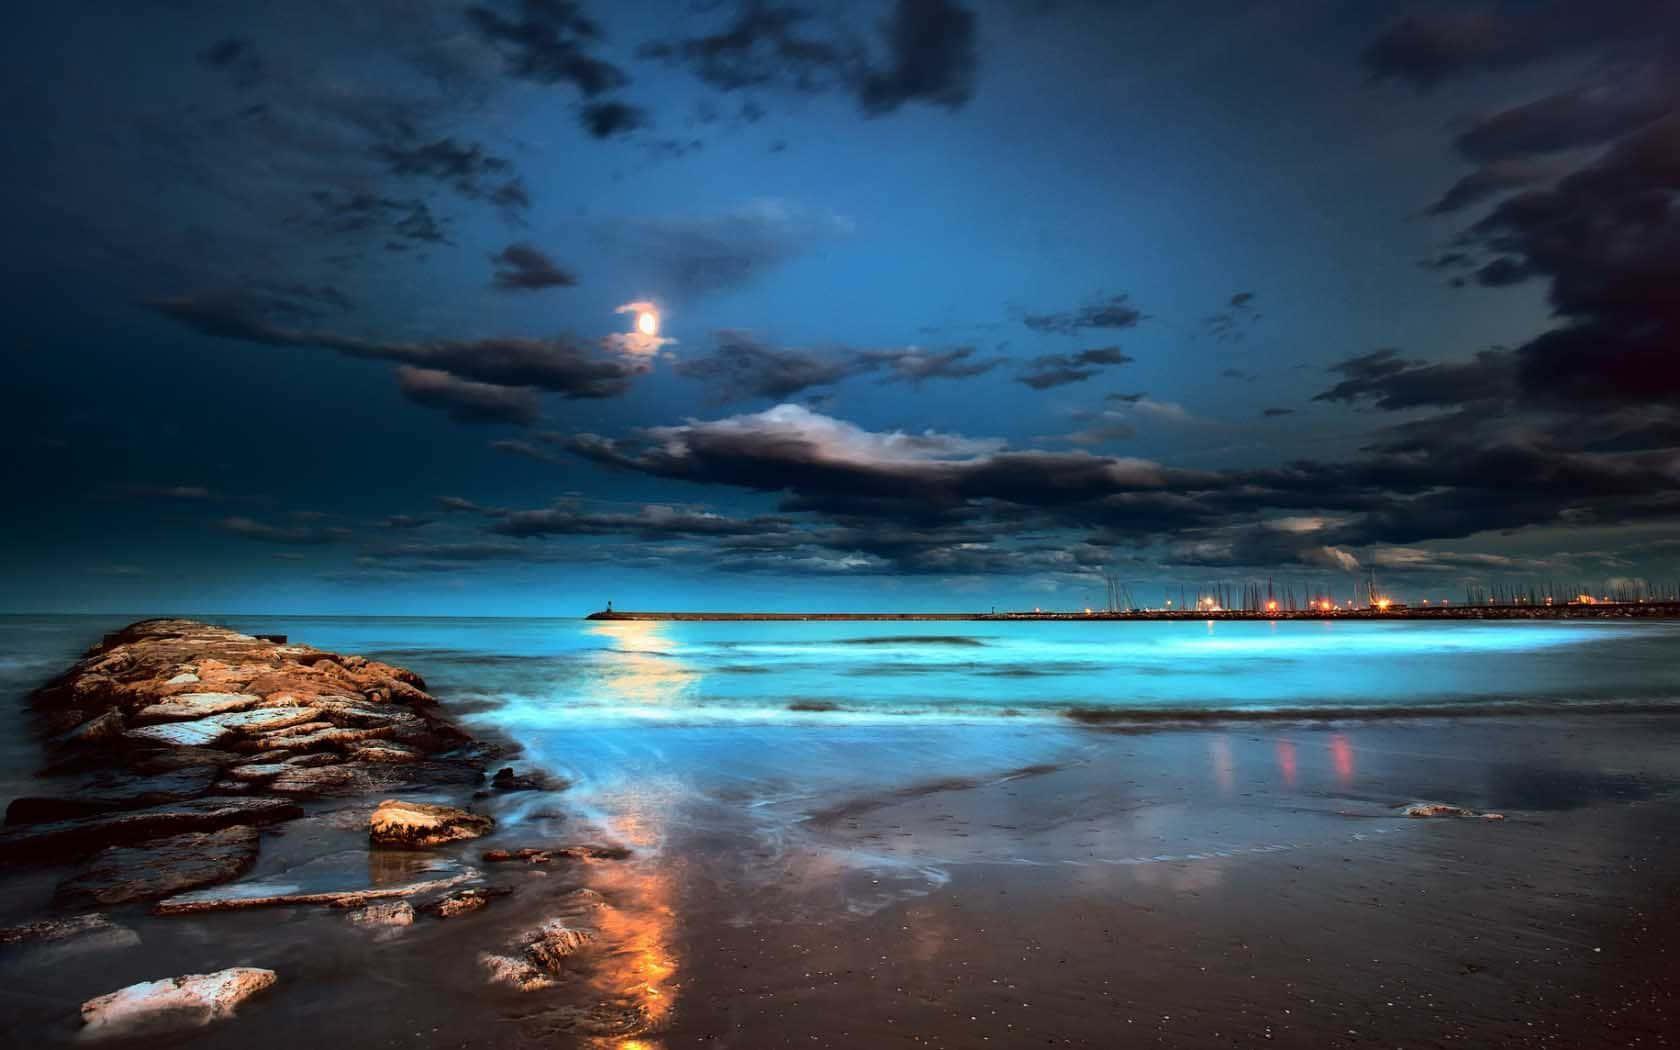 Imagennocturna De Una Playa Luminosa Y Azul.